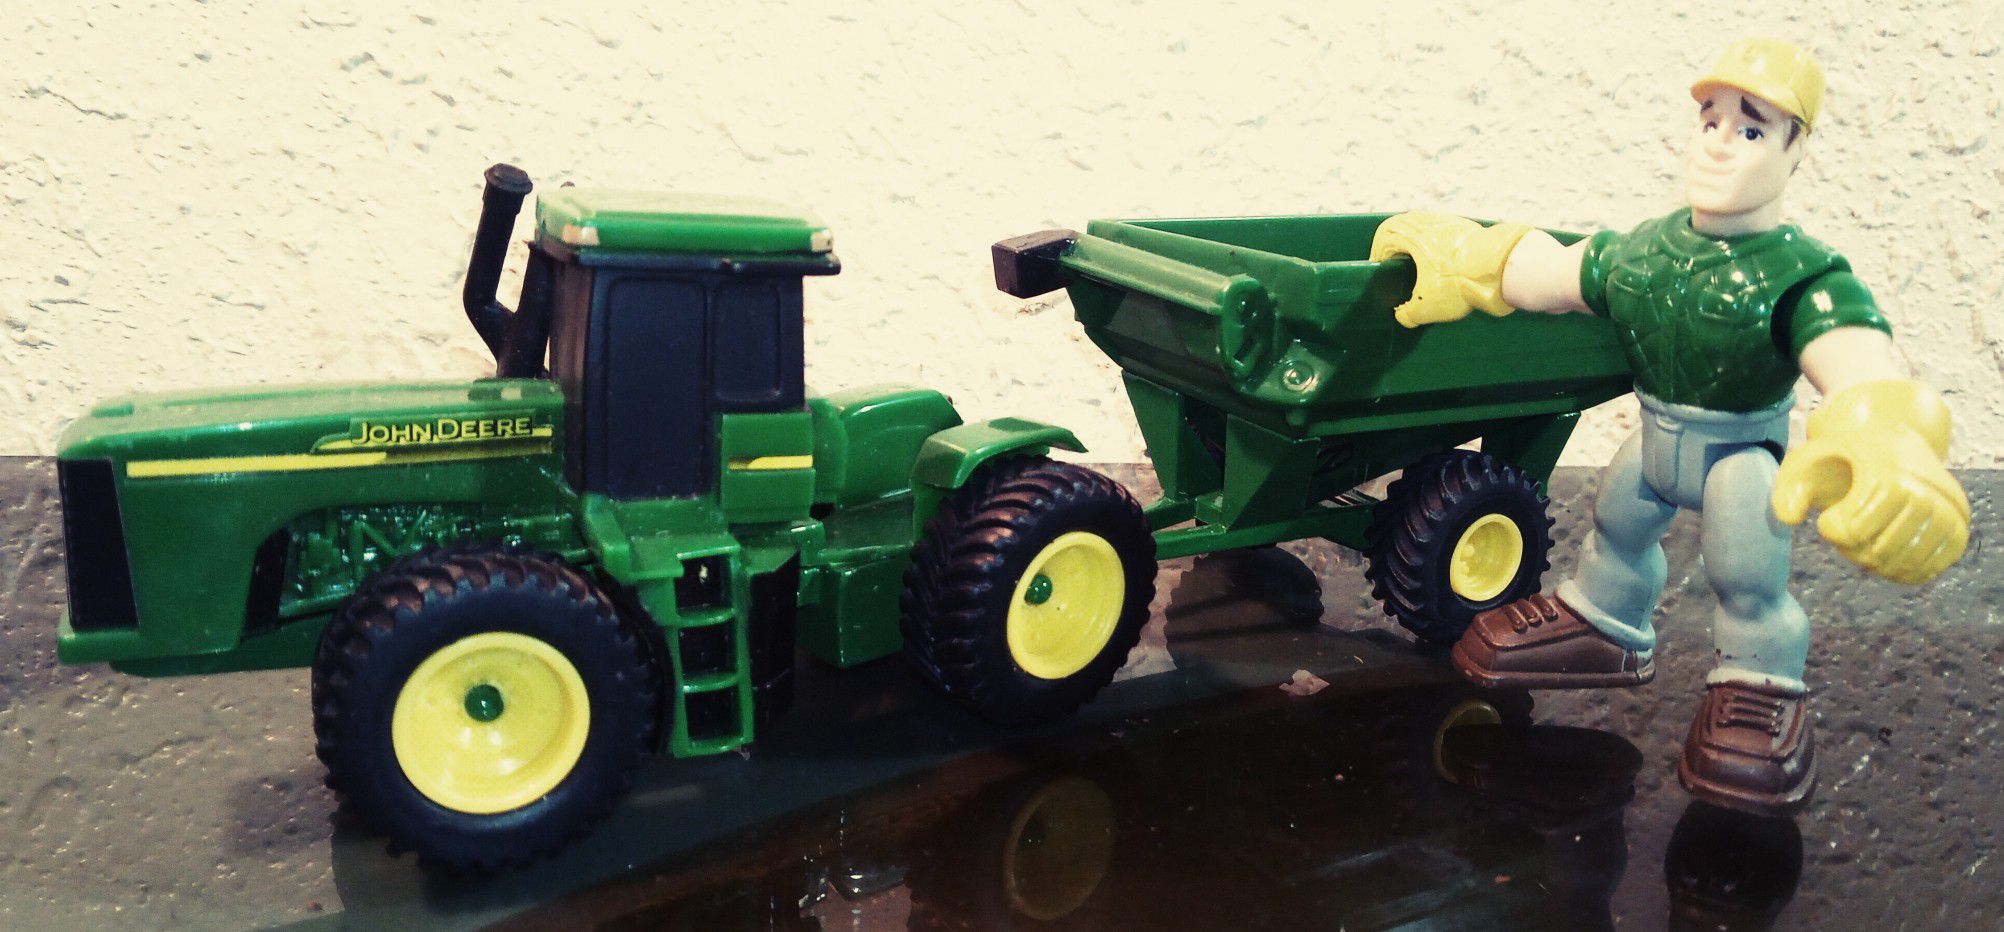 JOHN DEERE, ERTL, Farm Toy Tractor